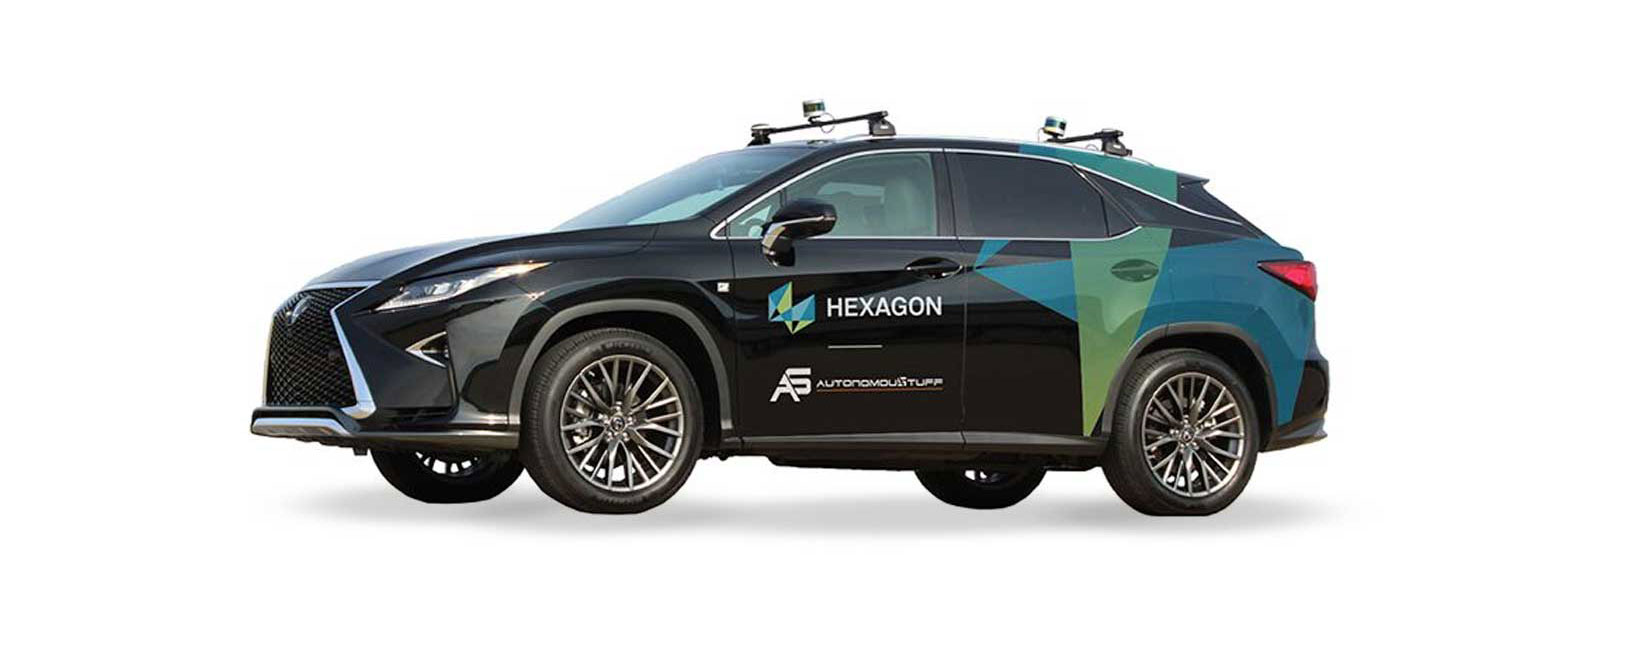 Imagen de un vehículo de la marca Hexagon con capacidades autónomas